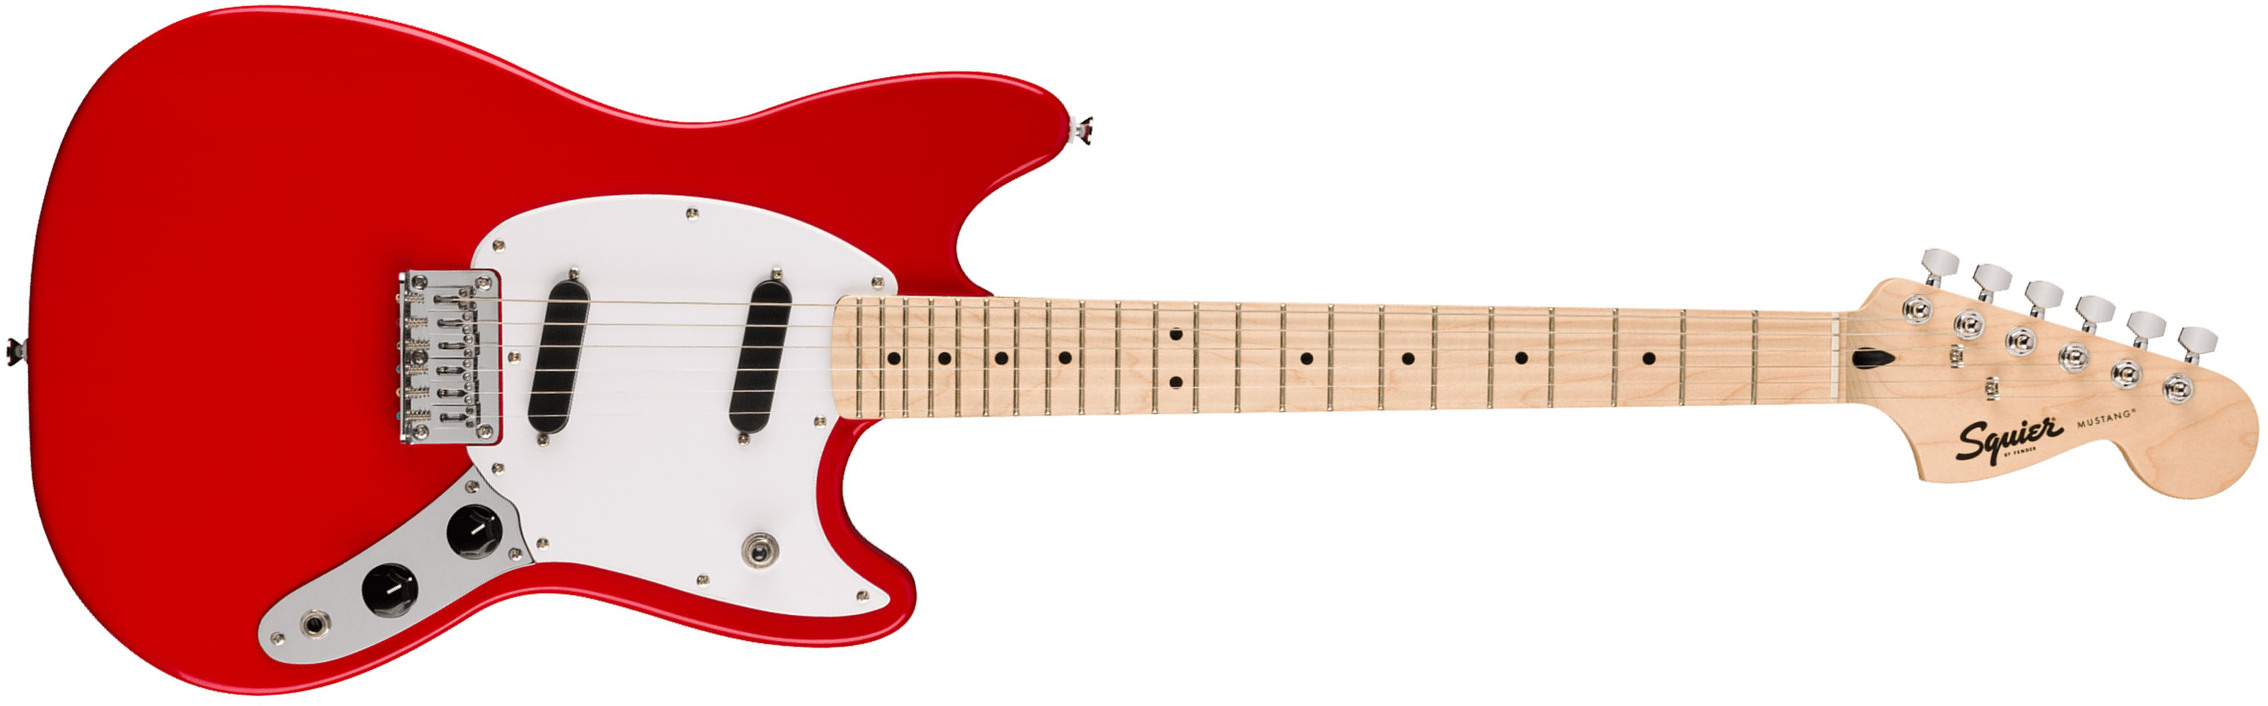 Squier Mustang Sonic 2s Ht Mn - Torino Red - Retro-rock elektrische gitaar - Main picture